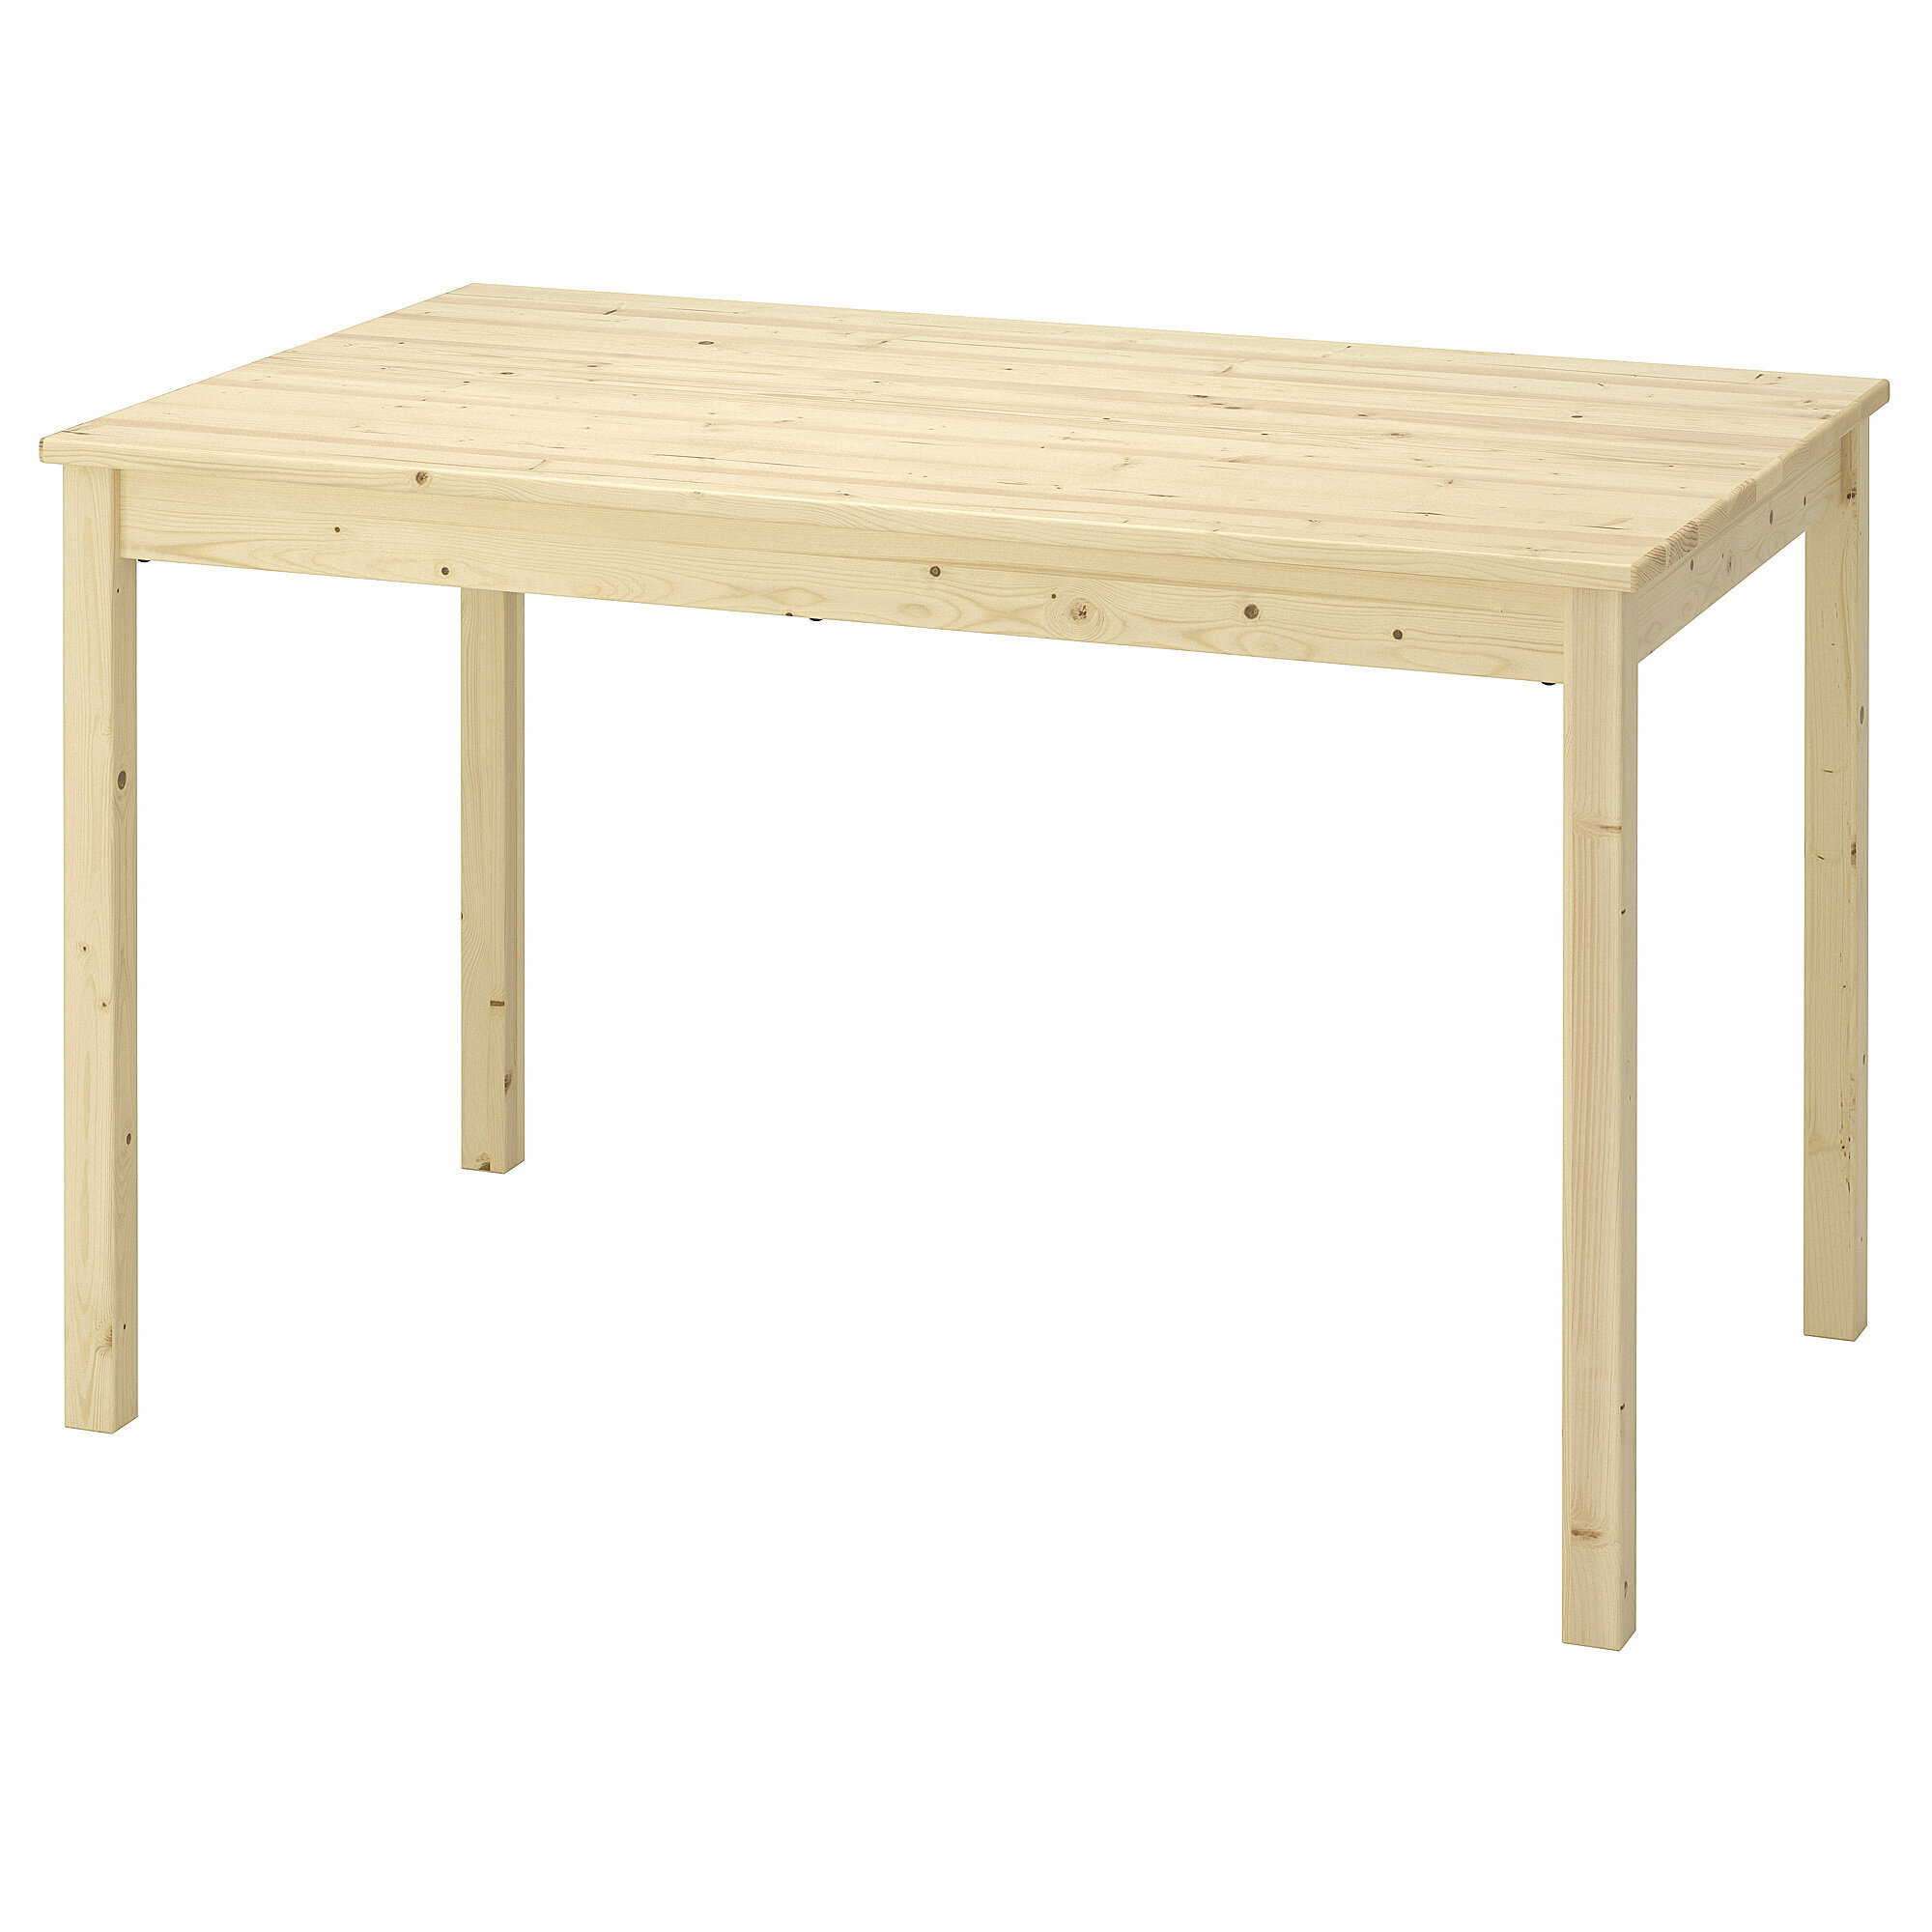 Стол деревянный IKEA Ingo из массива сосны 120*75 см (Икеа Ингу)